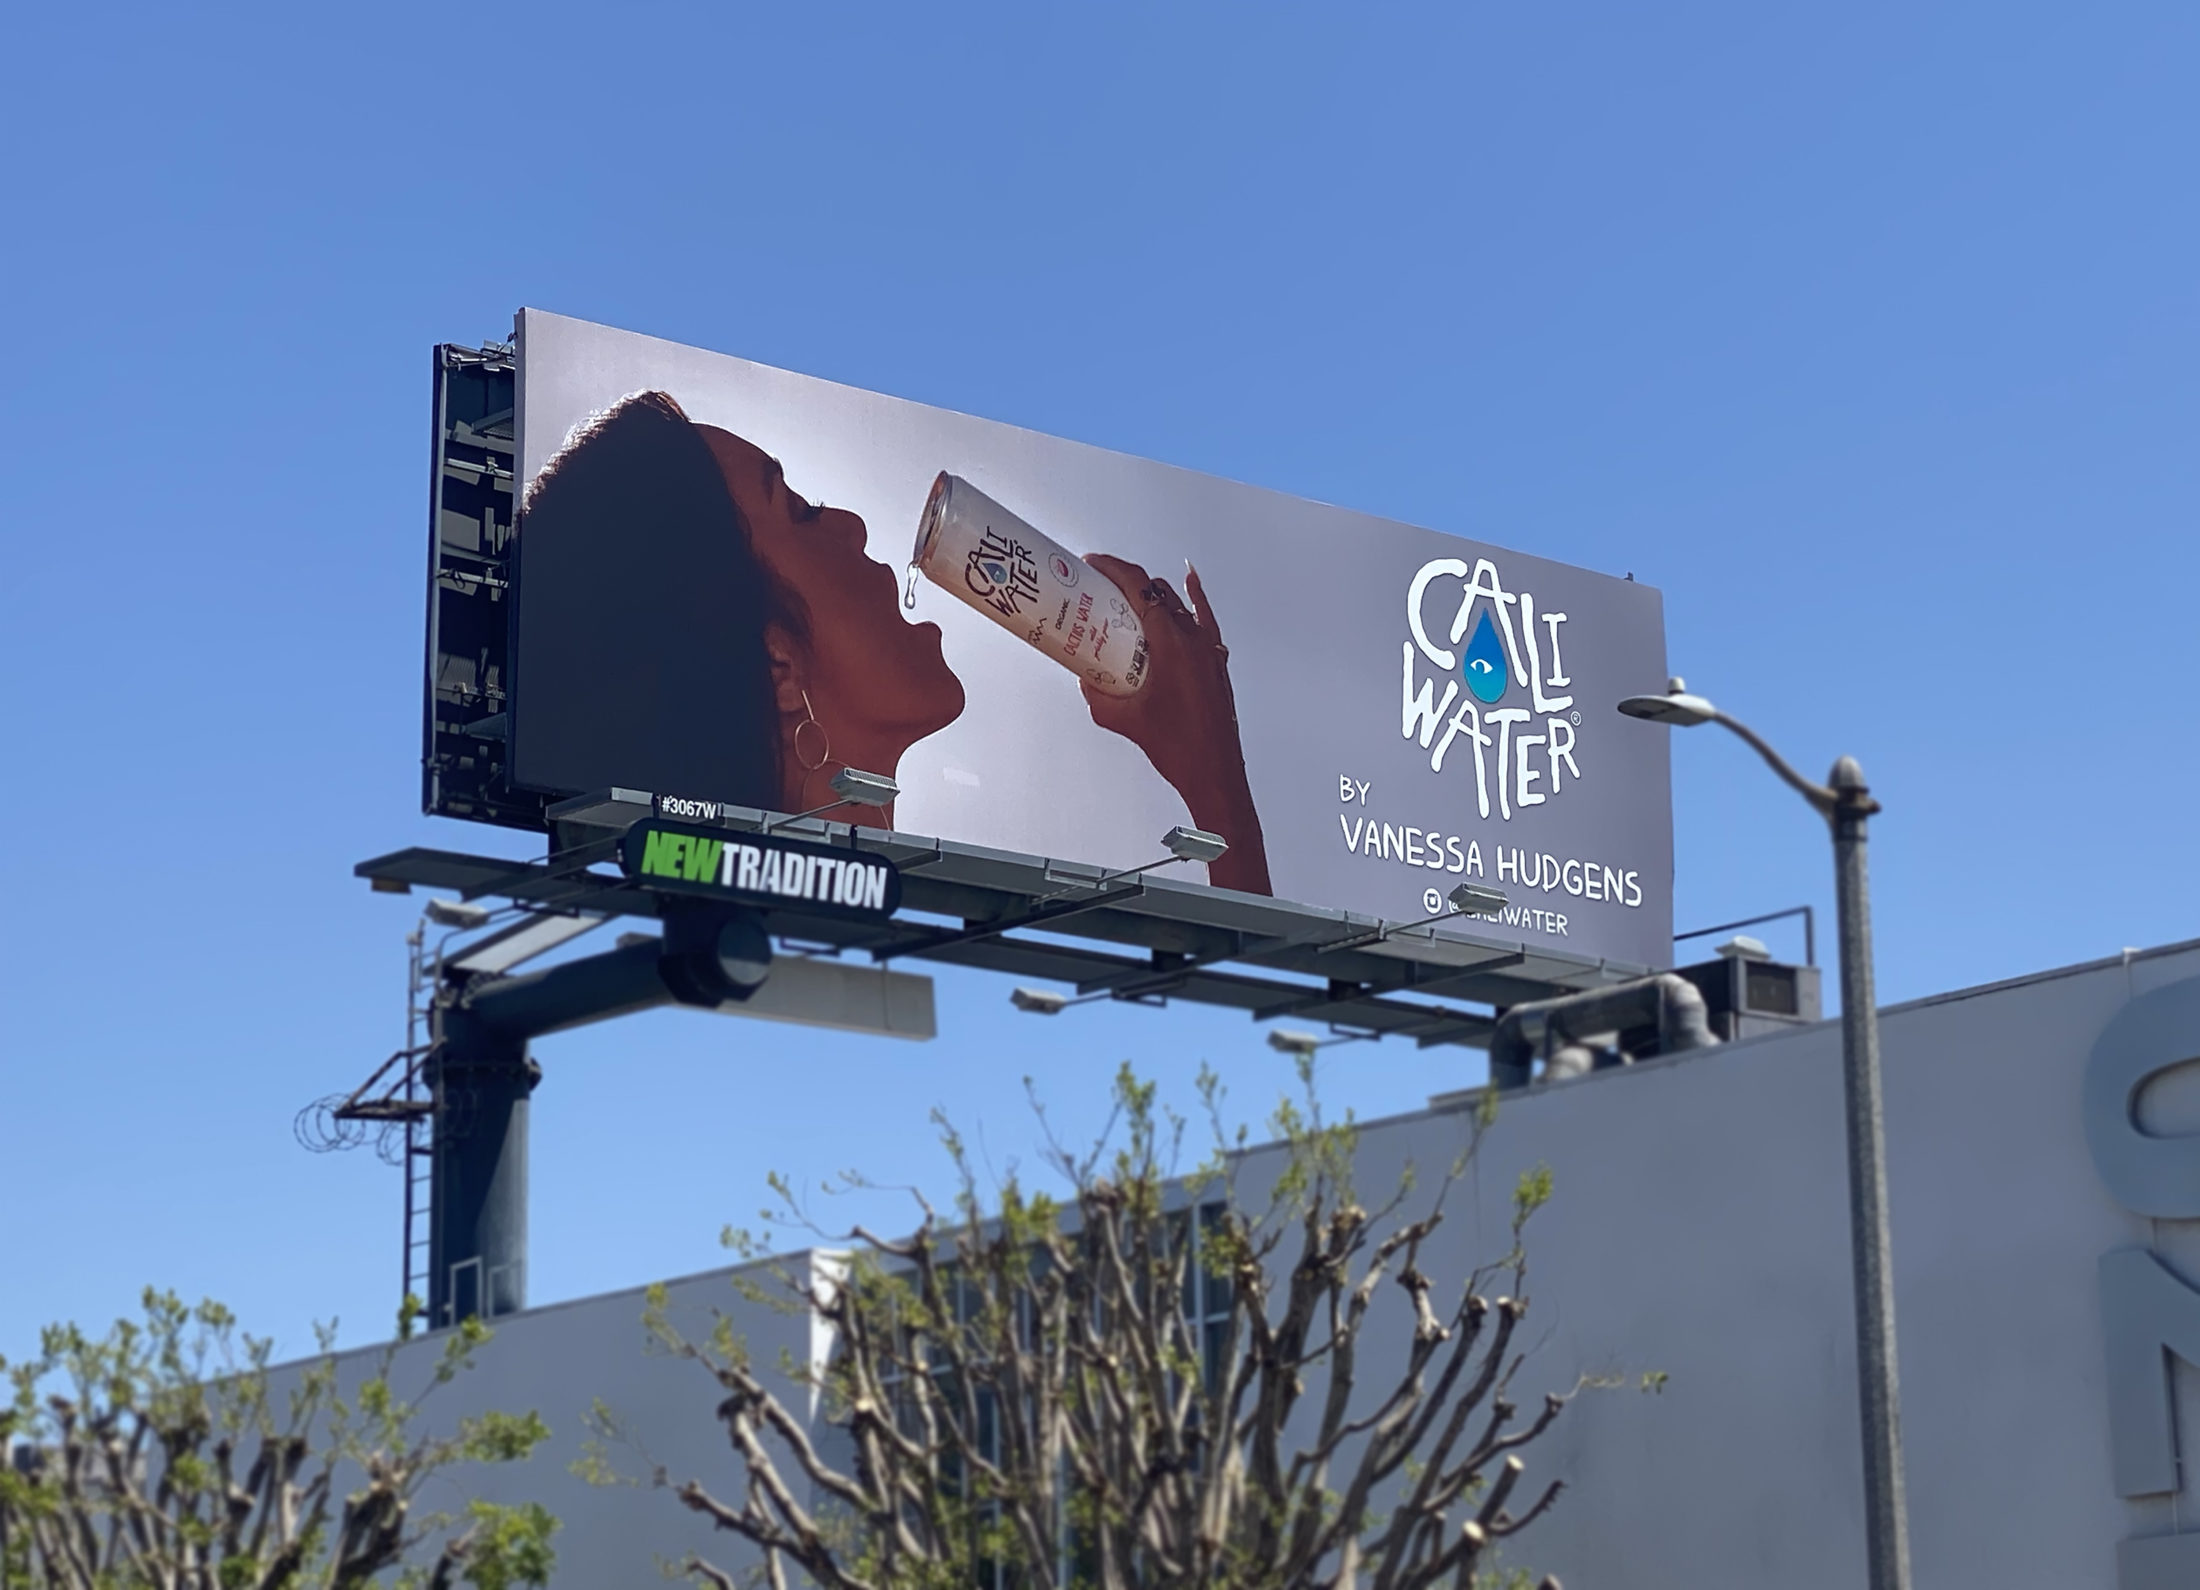 Billboard image of Caliwater Cactus Beverage featuring Vanessa Hudgens.